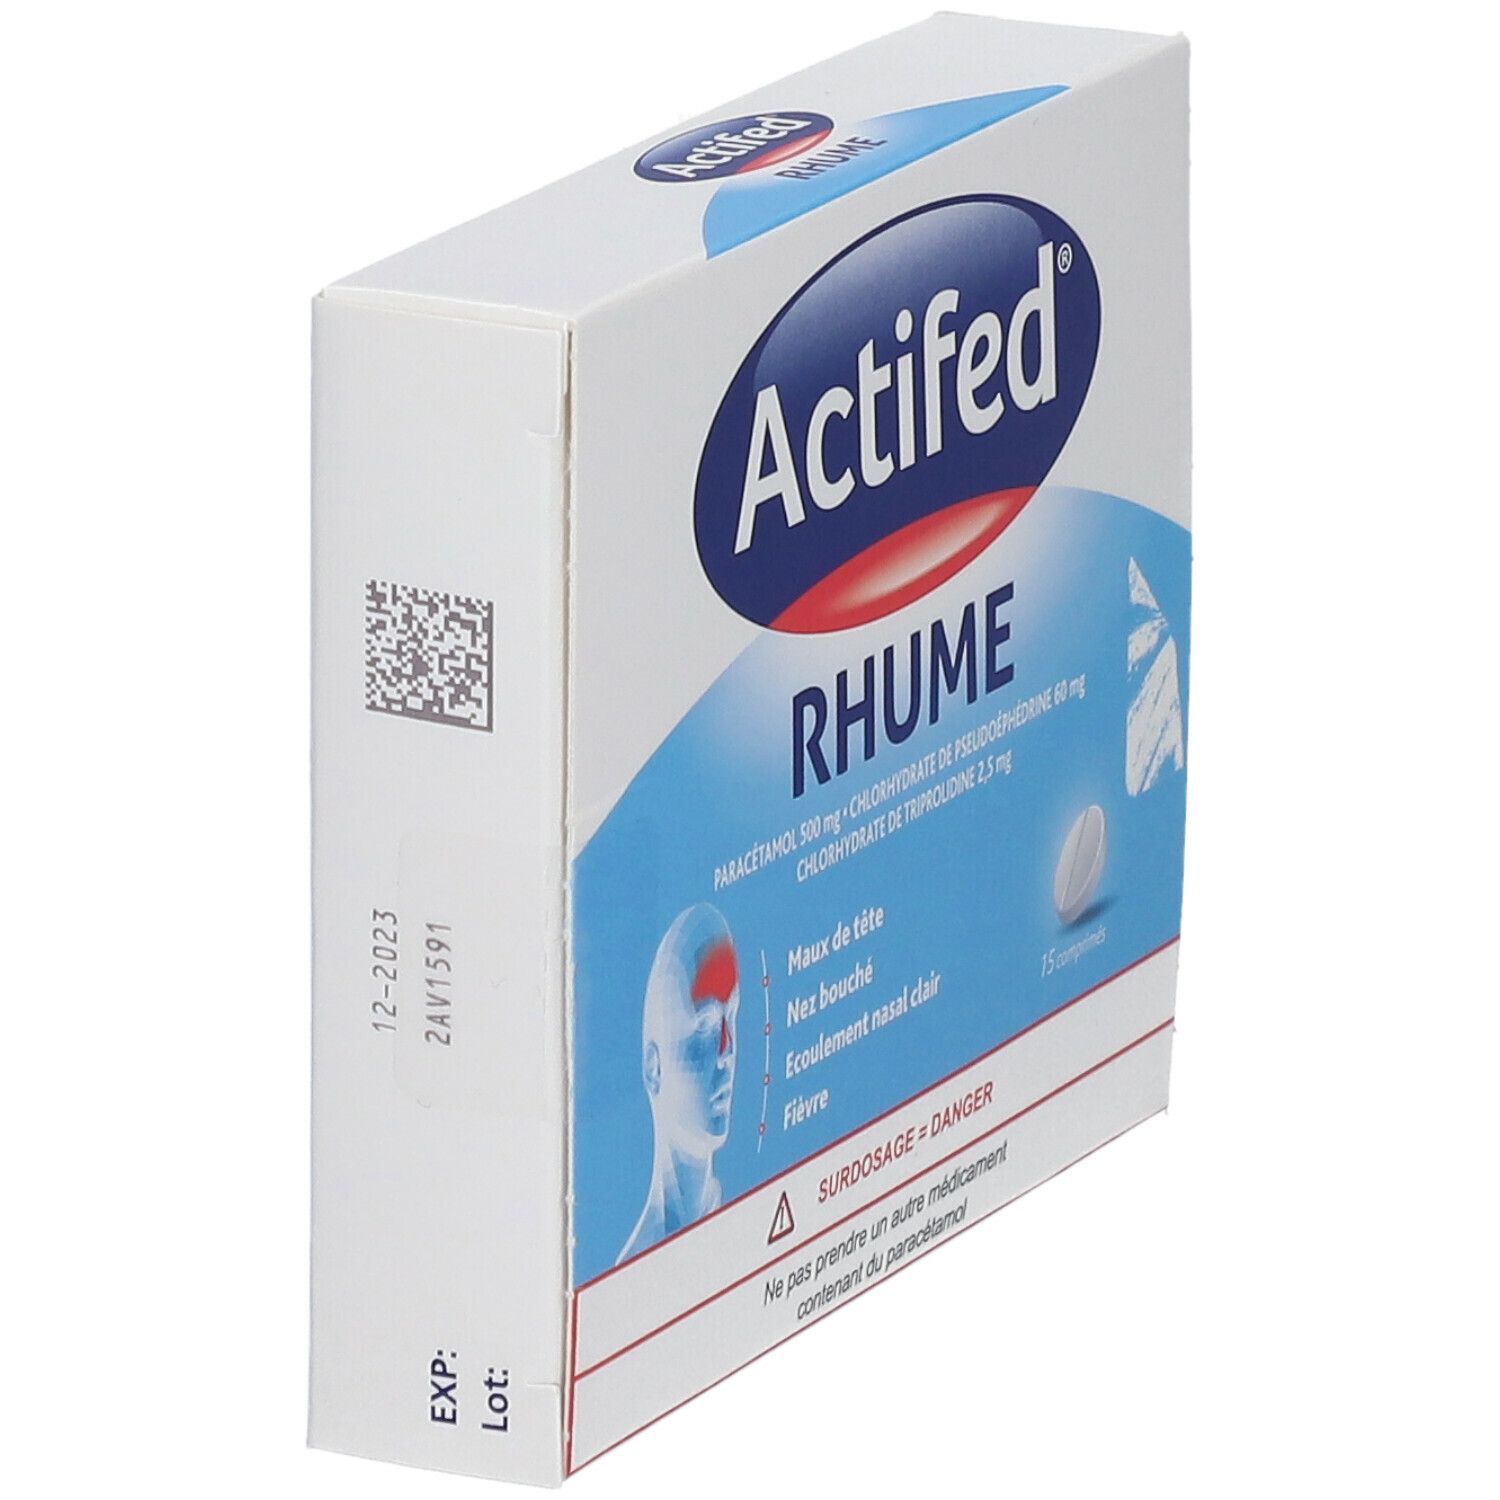 Actifed® Rhume